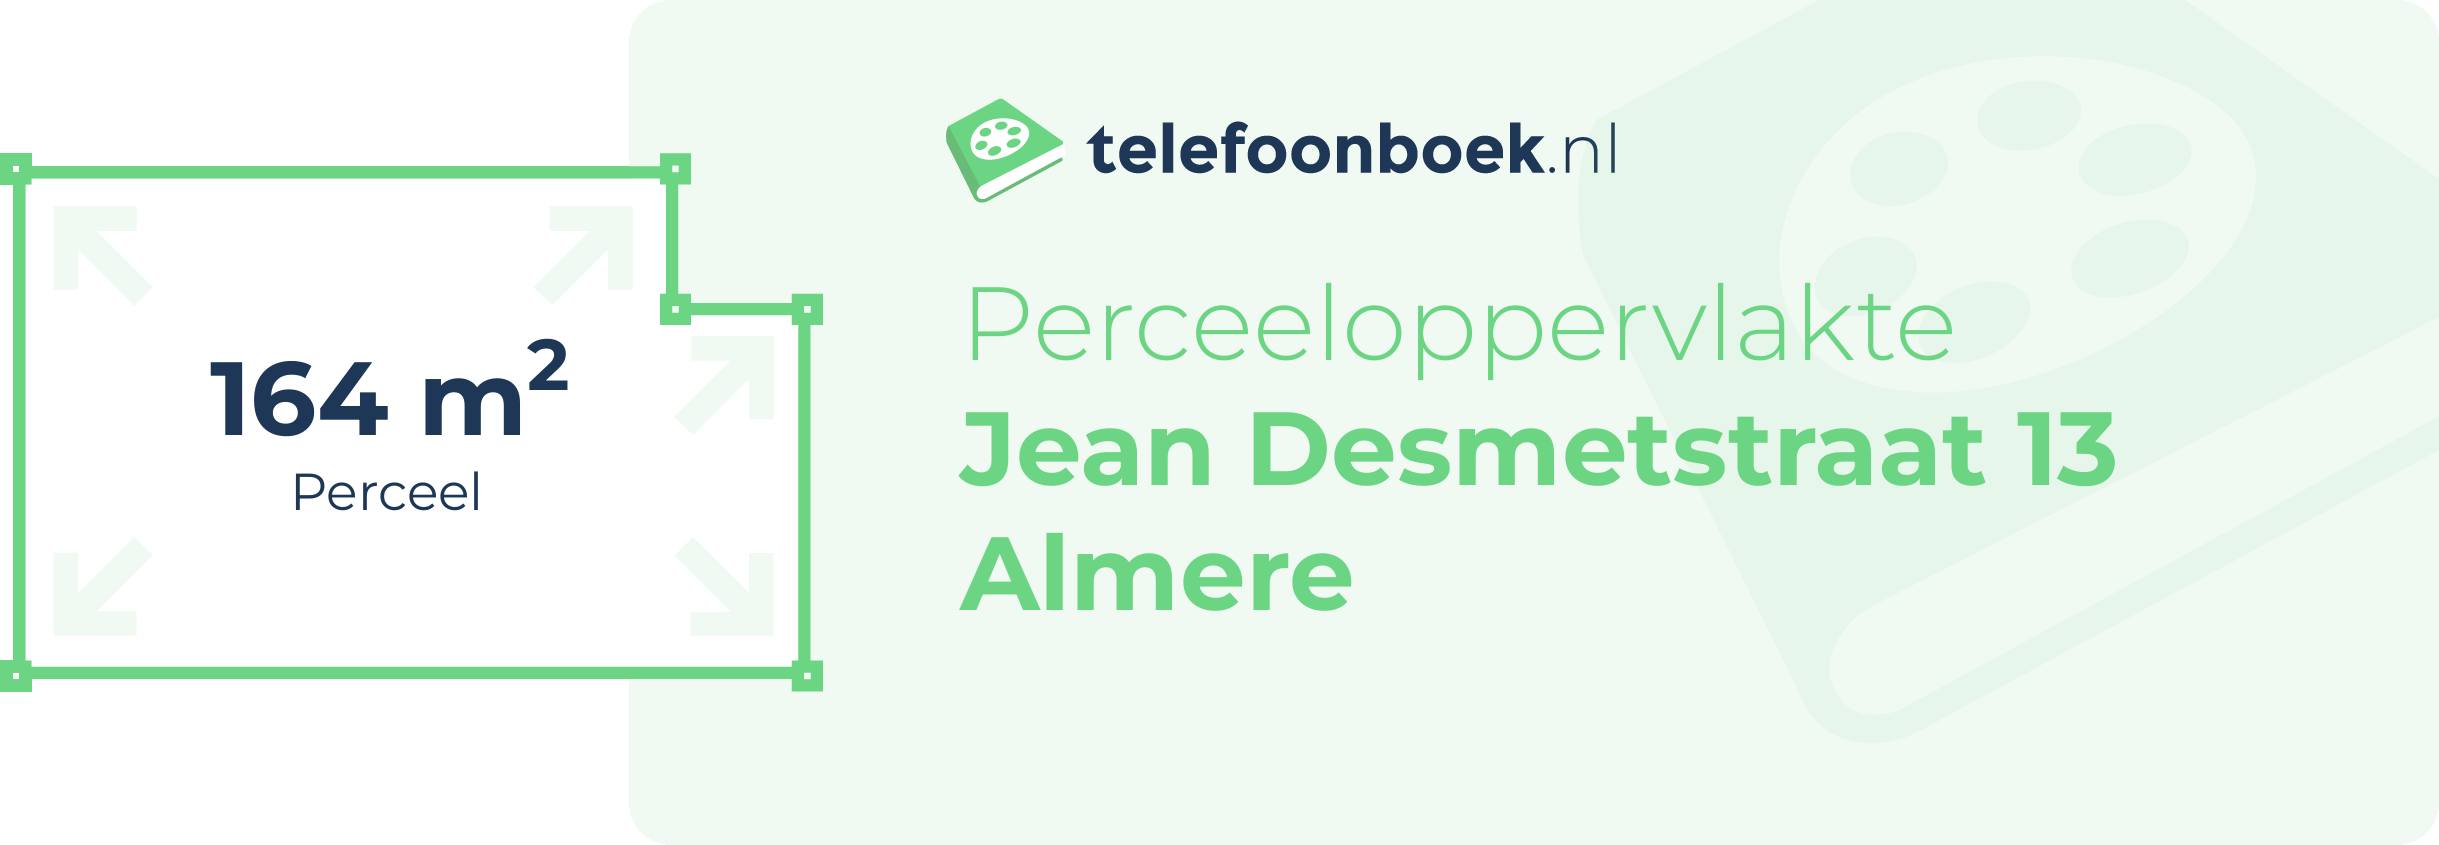 Perceeloppervlakte Jean Desmetstraat 13 Almere